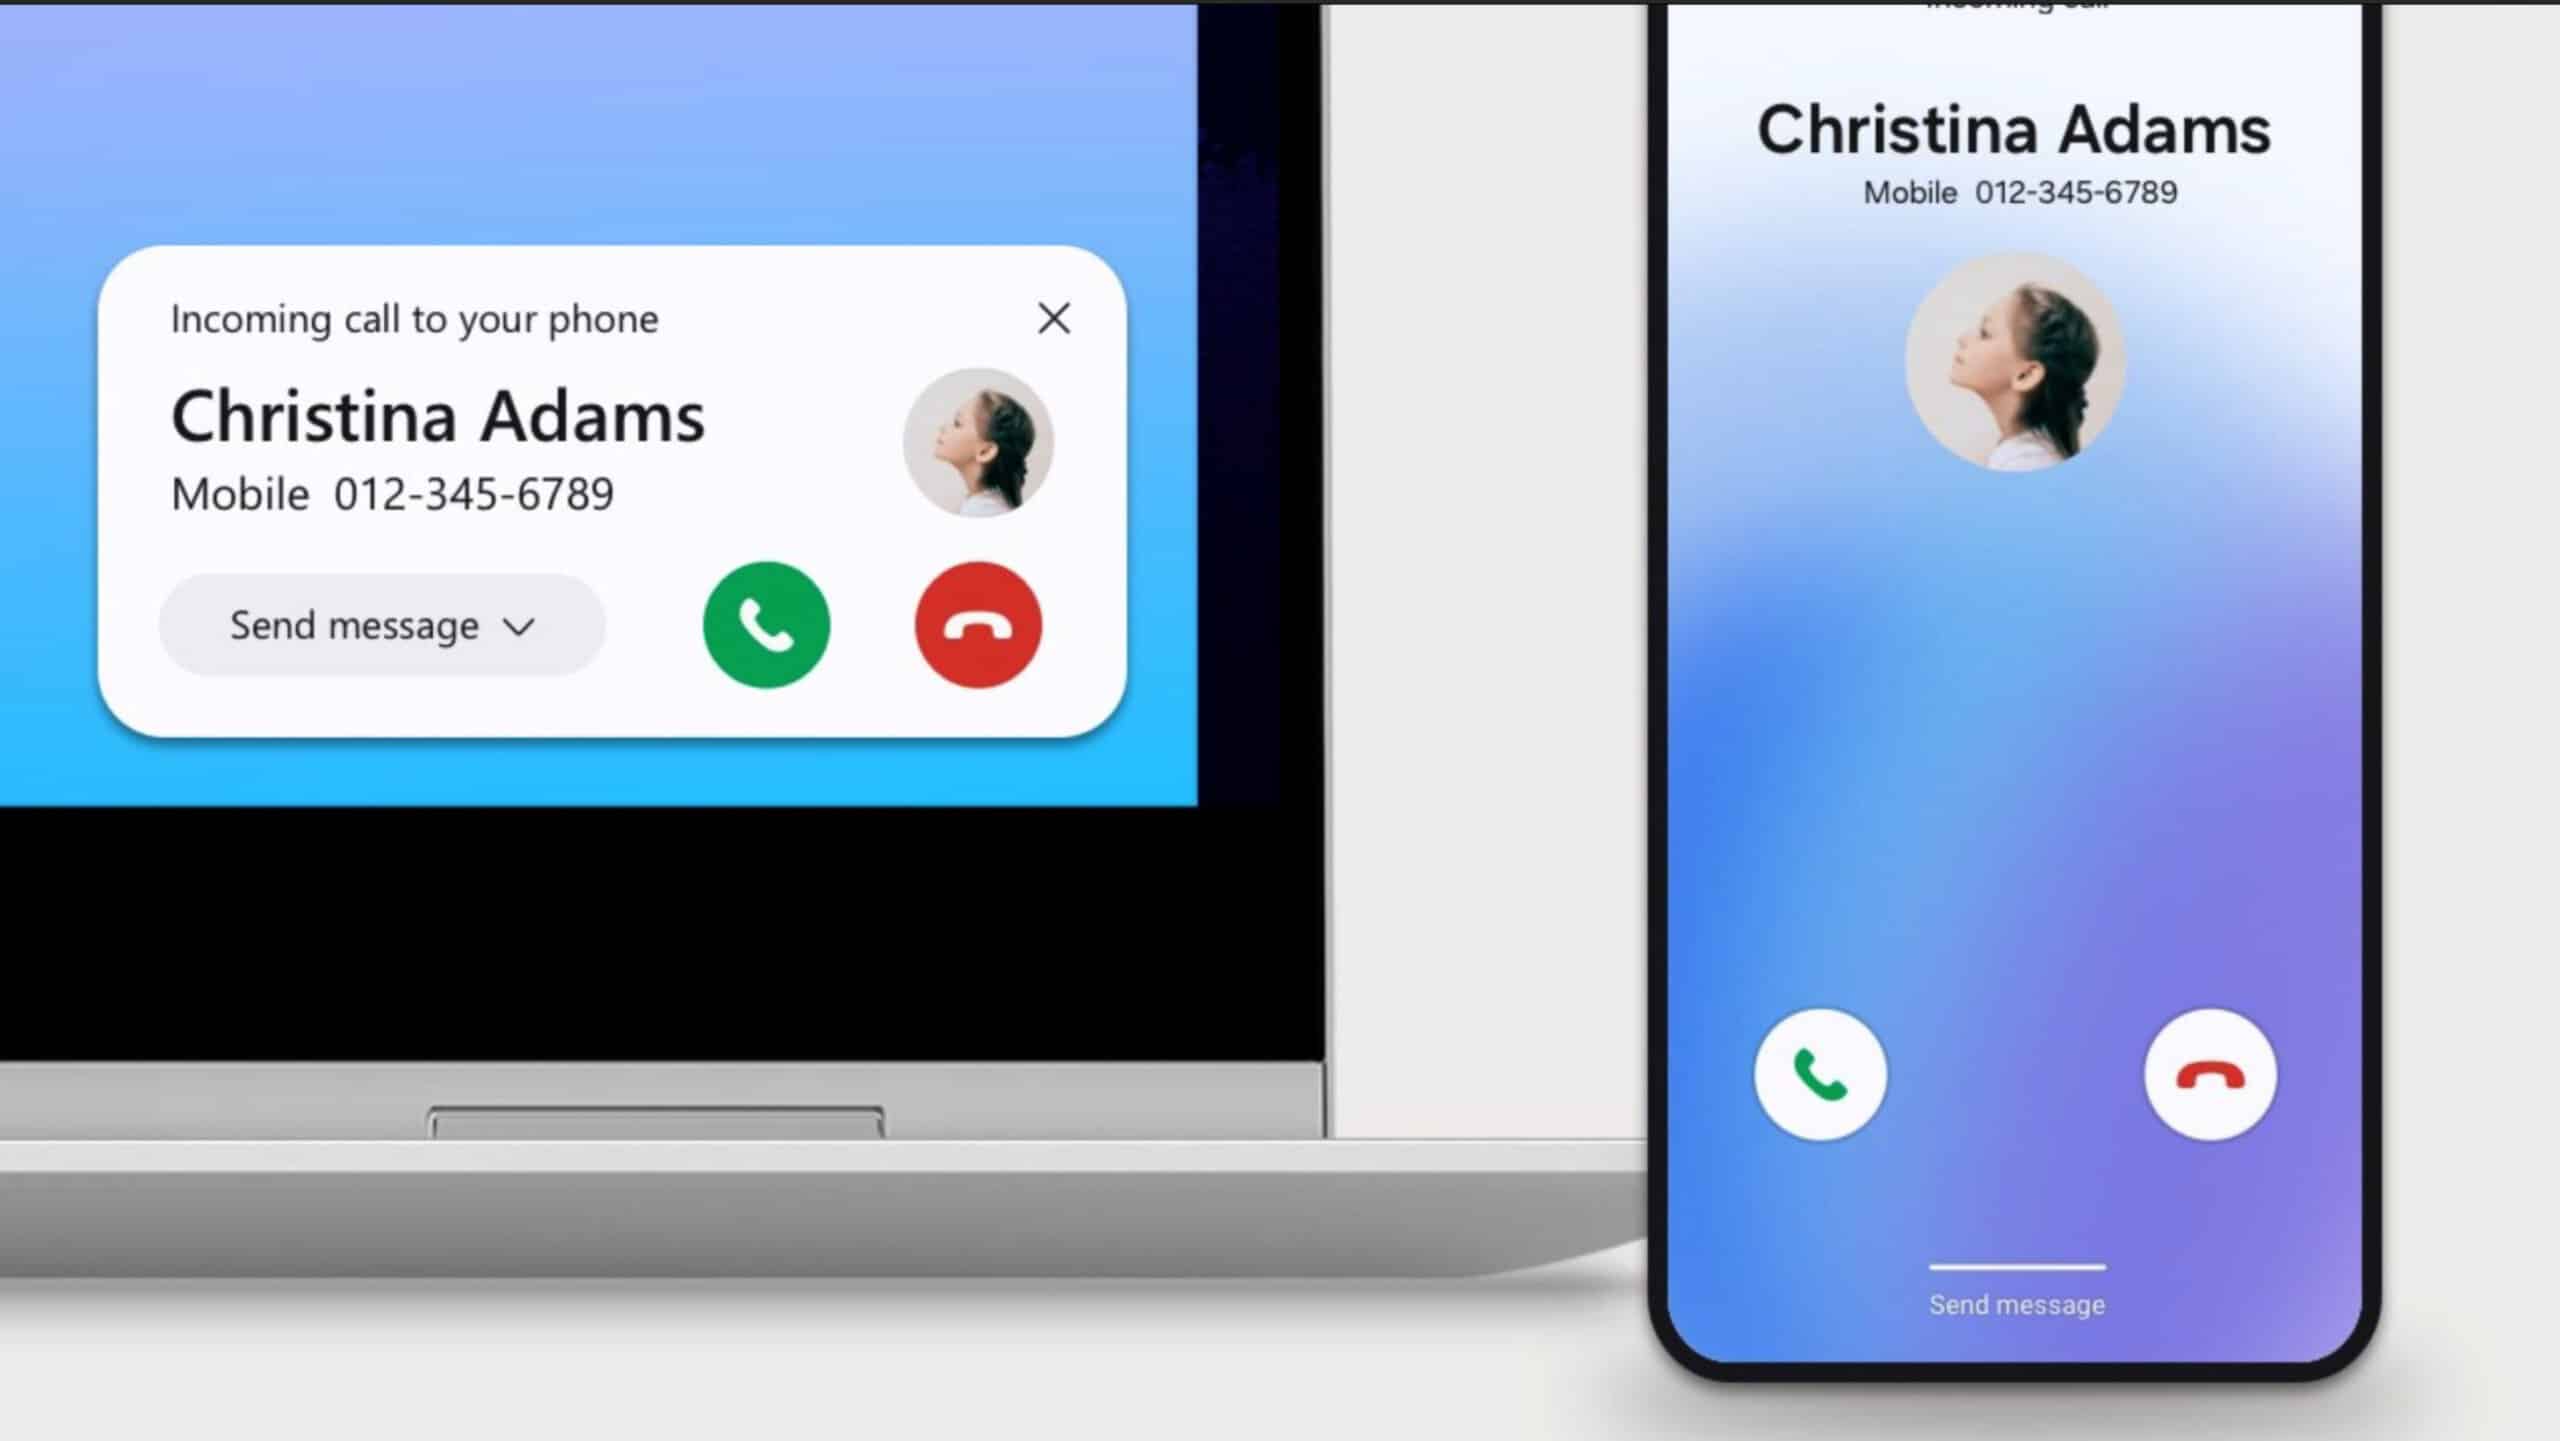 Samsung Phone pour Windows : tout savoir de cette nouvelle application inspirée d’Apple